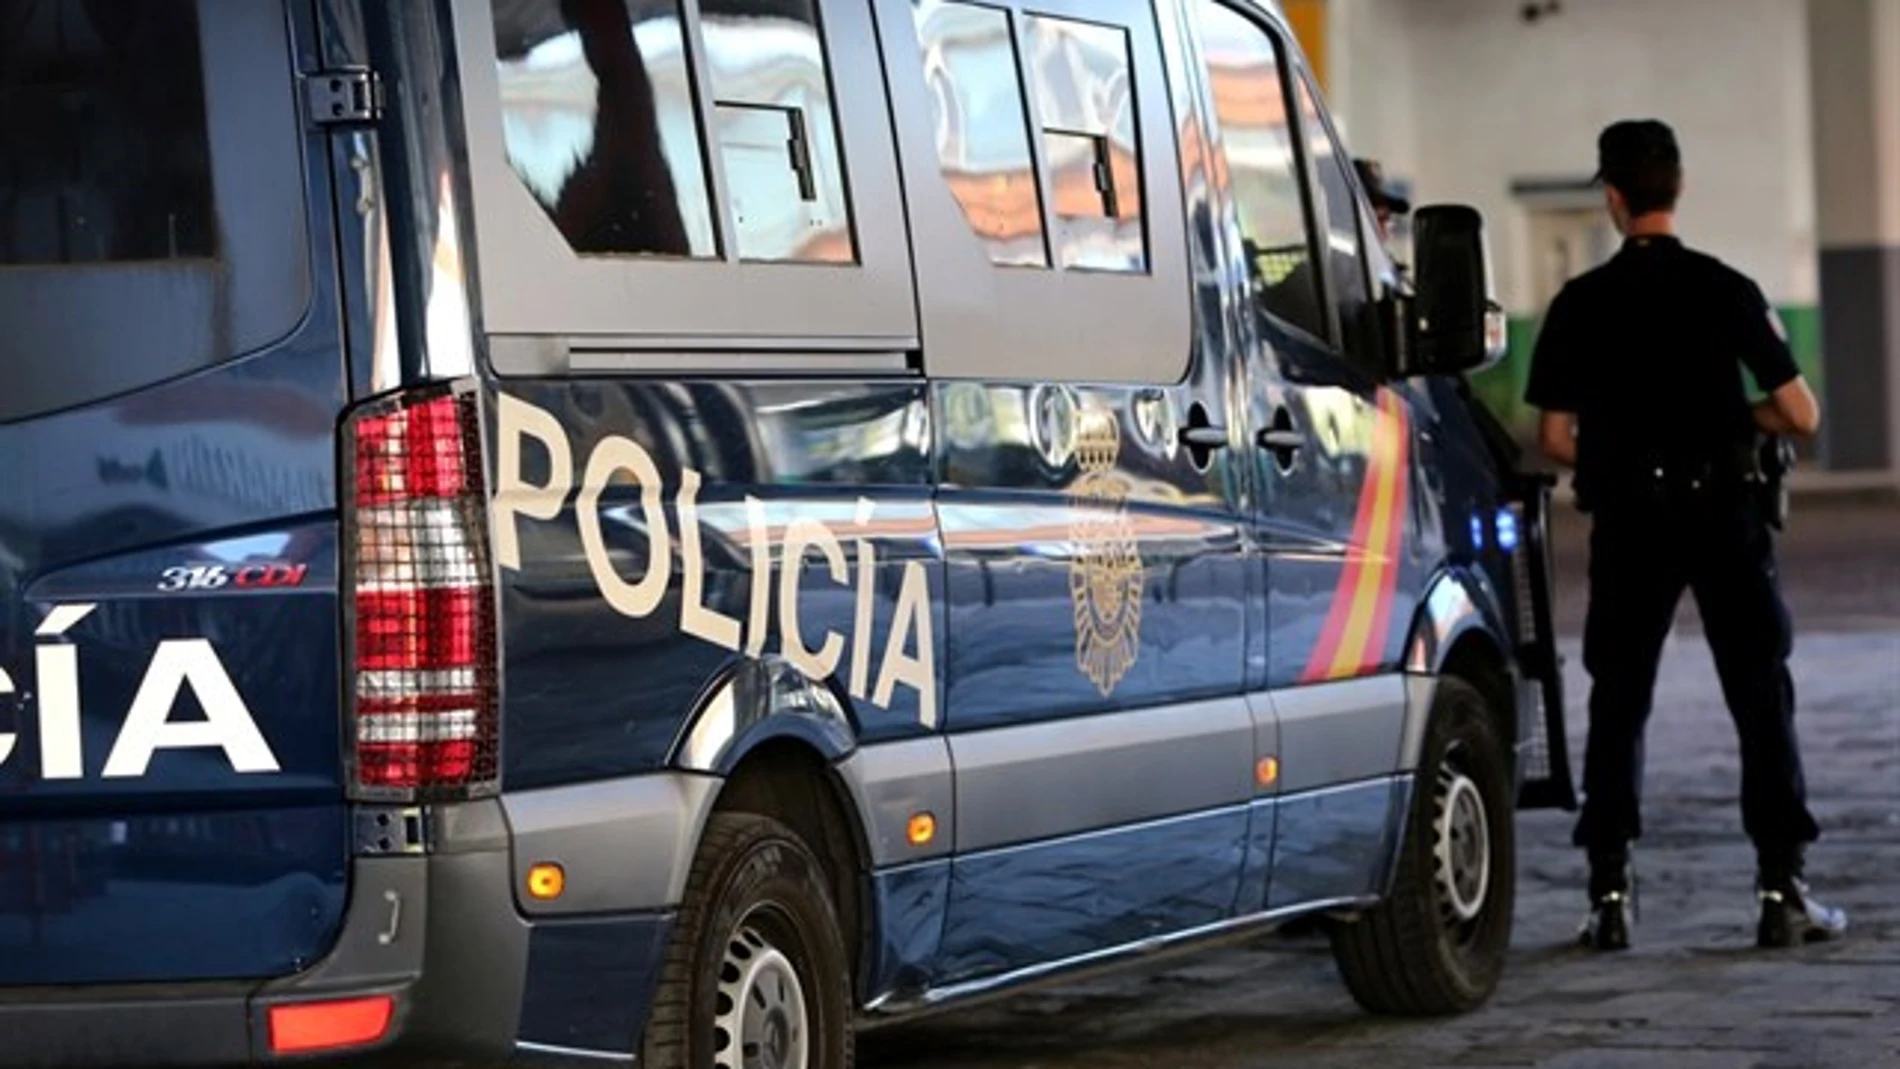 Los hechos tuvieron lugar el pasado 23 de febrero en Alcalá de Henares